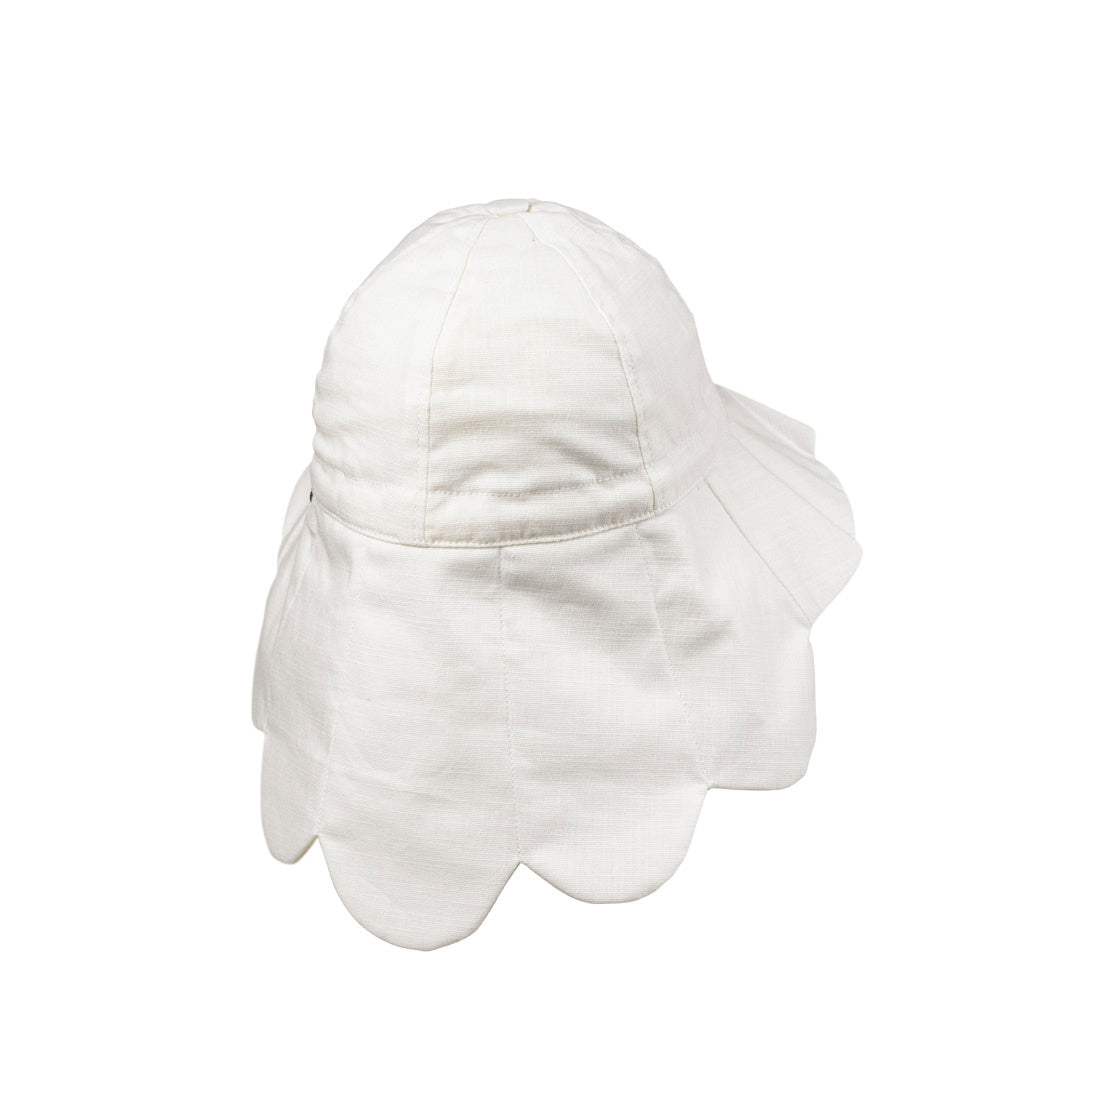 Elodie Details - sun hat - Vanilla White - 3-100 years old